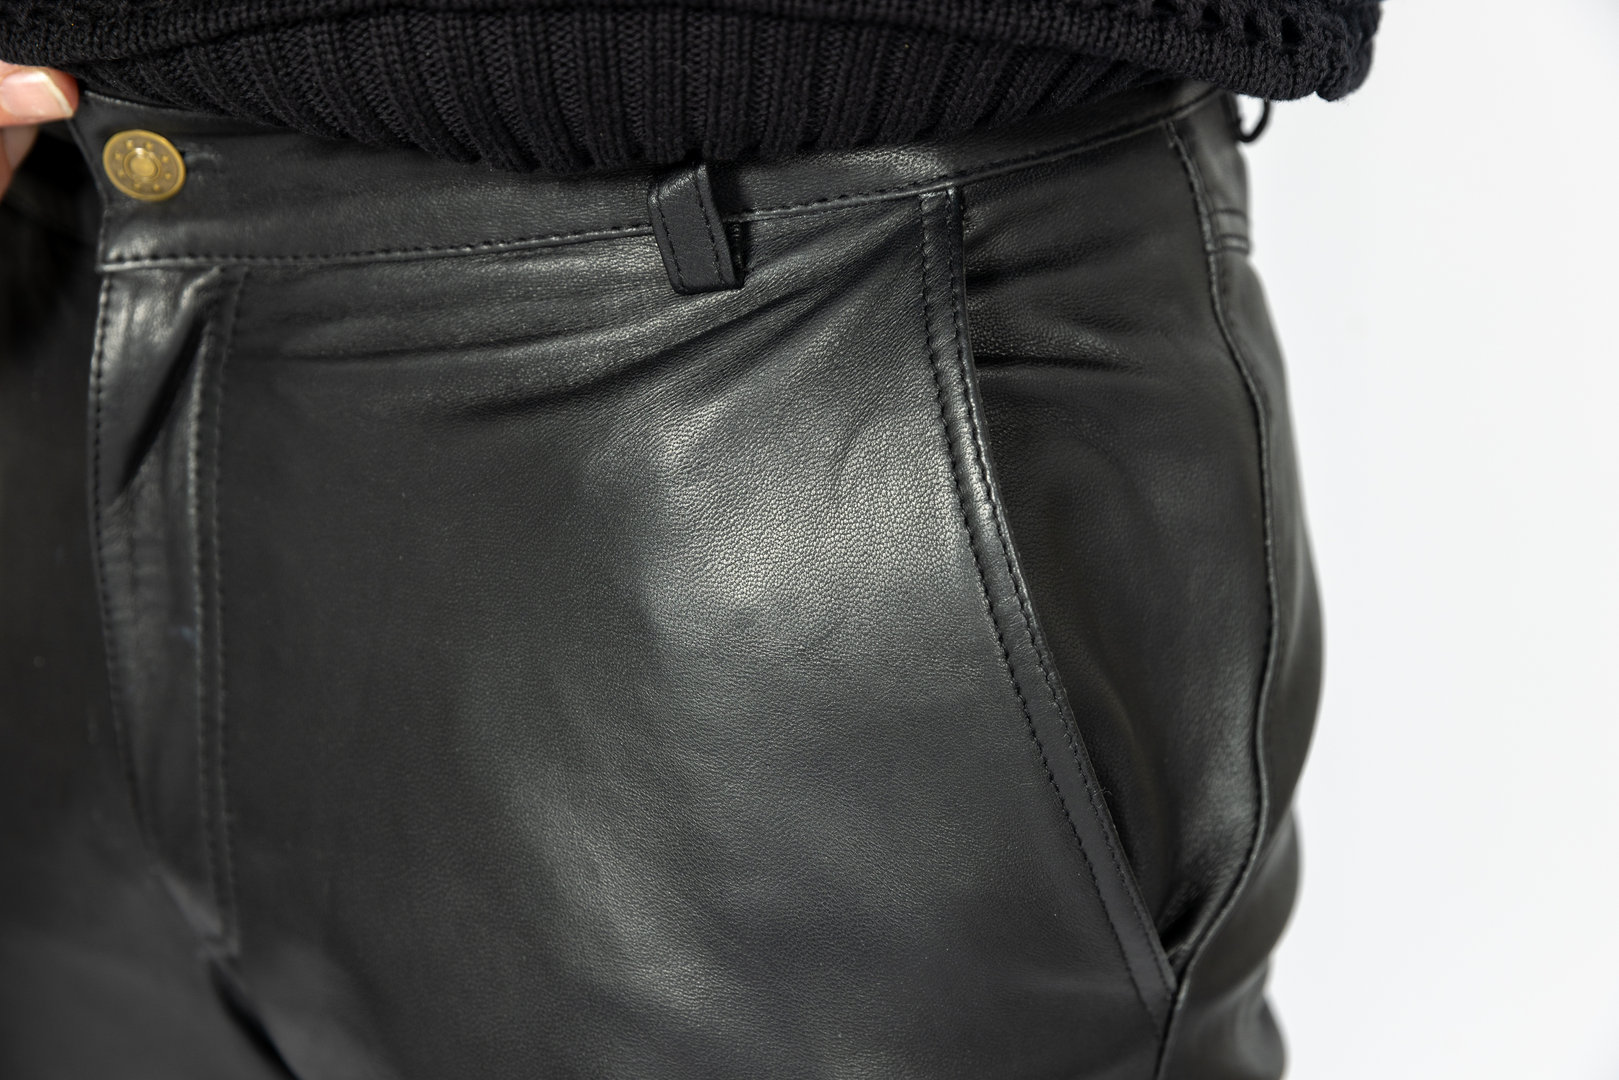 Chino broek zo nobel - echt leren broek zwart